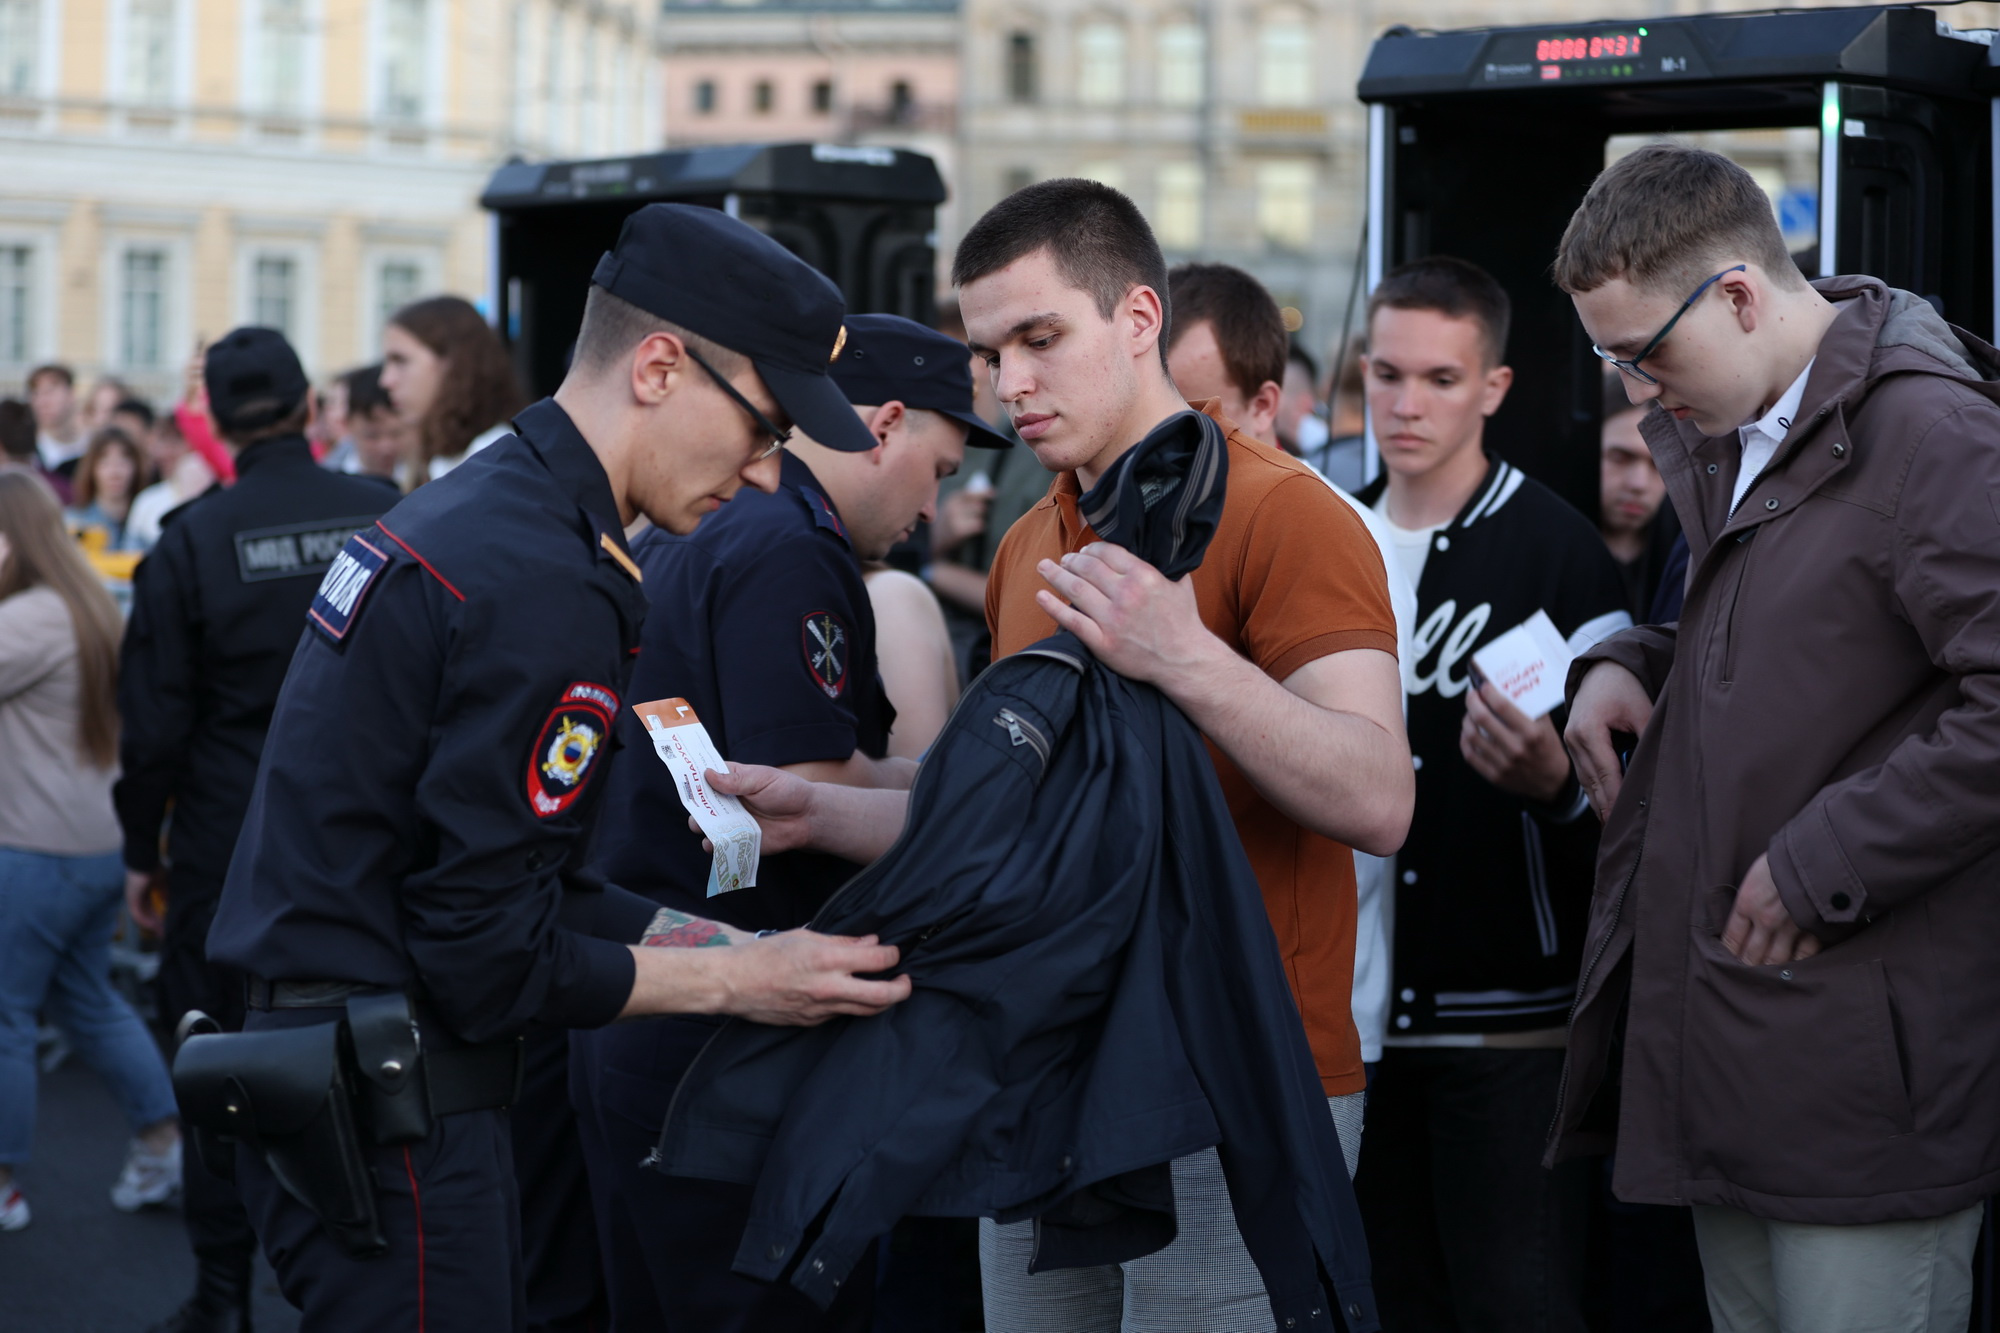 полиция санкт петербурга